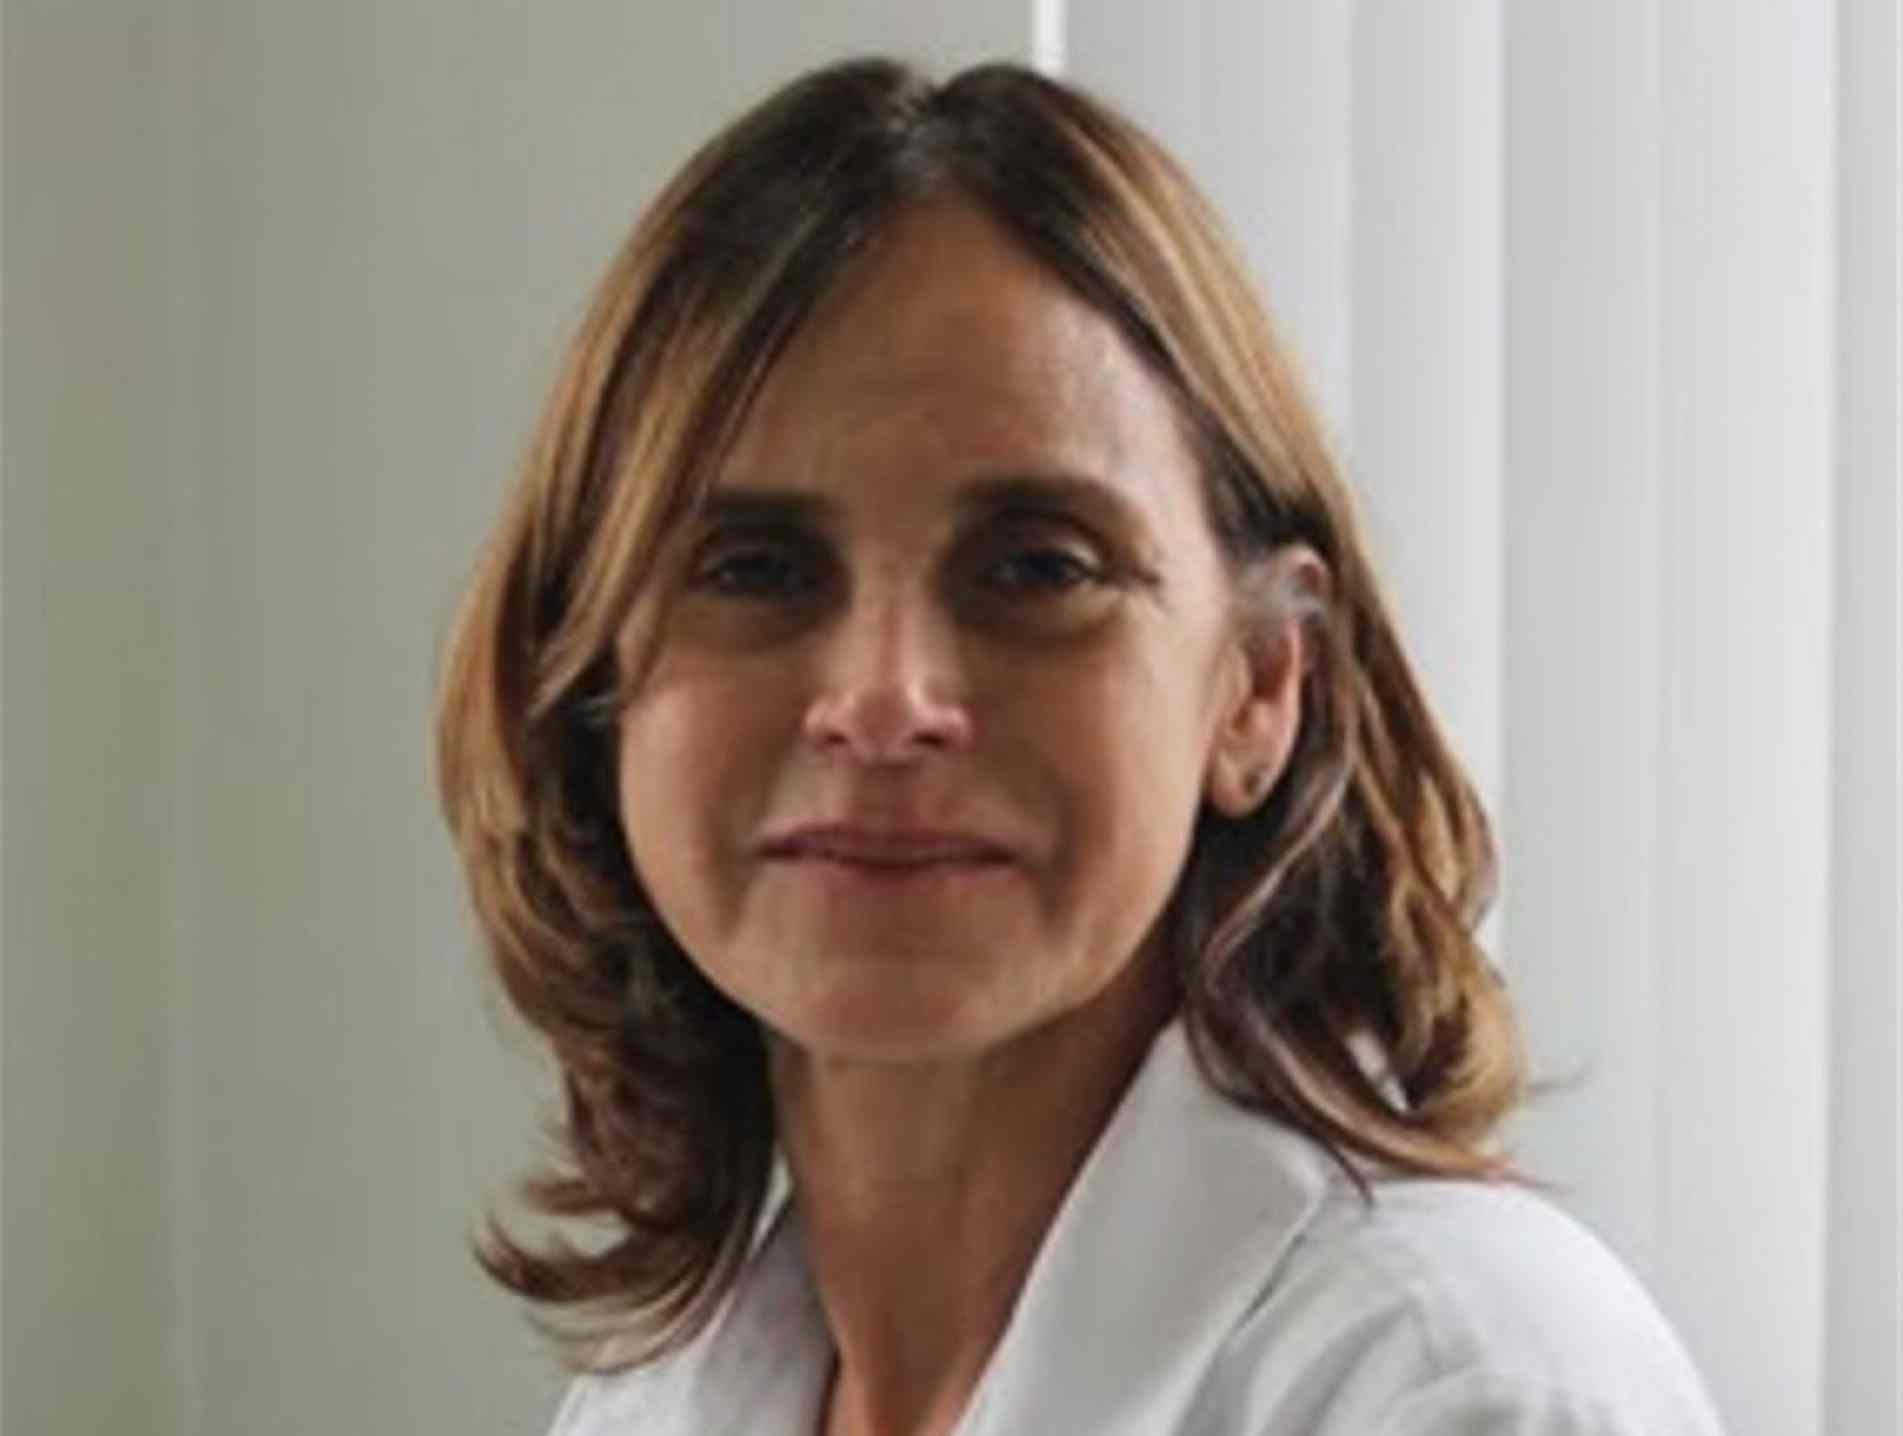 Médica Rosana Maria Paiva dos Anjos; "não há embasamento".